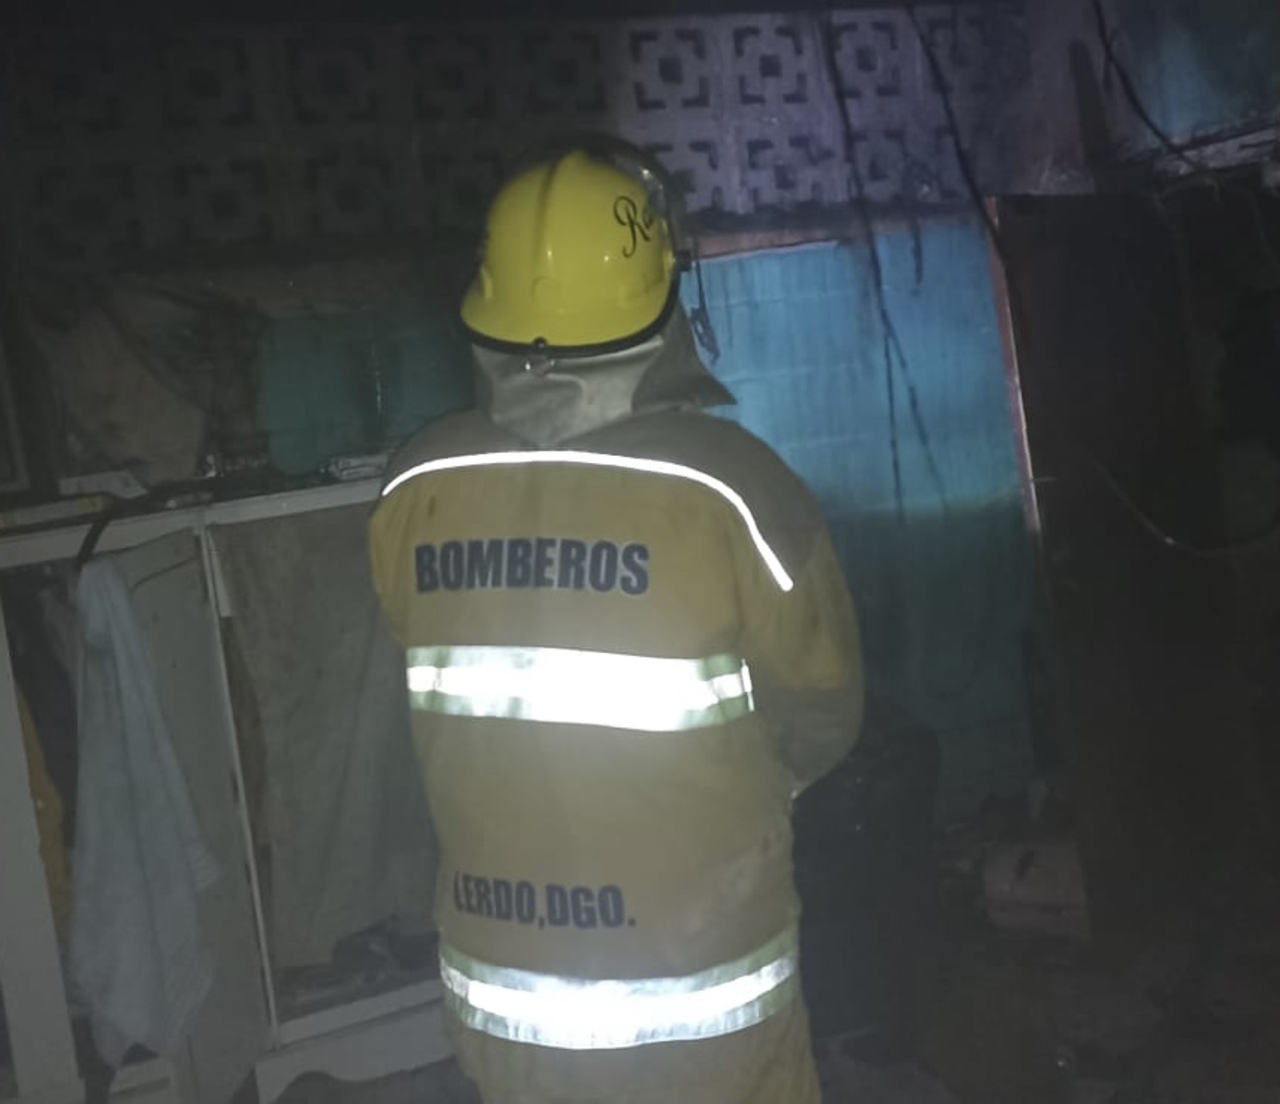 El personal del departamento de Bomberos se encargó de atender la emergencia, de cerrar la válvula y verificar el estado del cilindro.